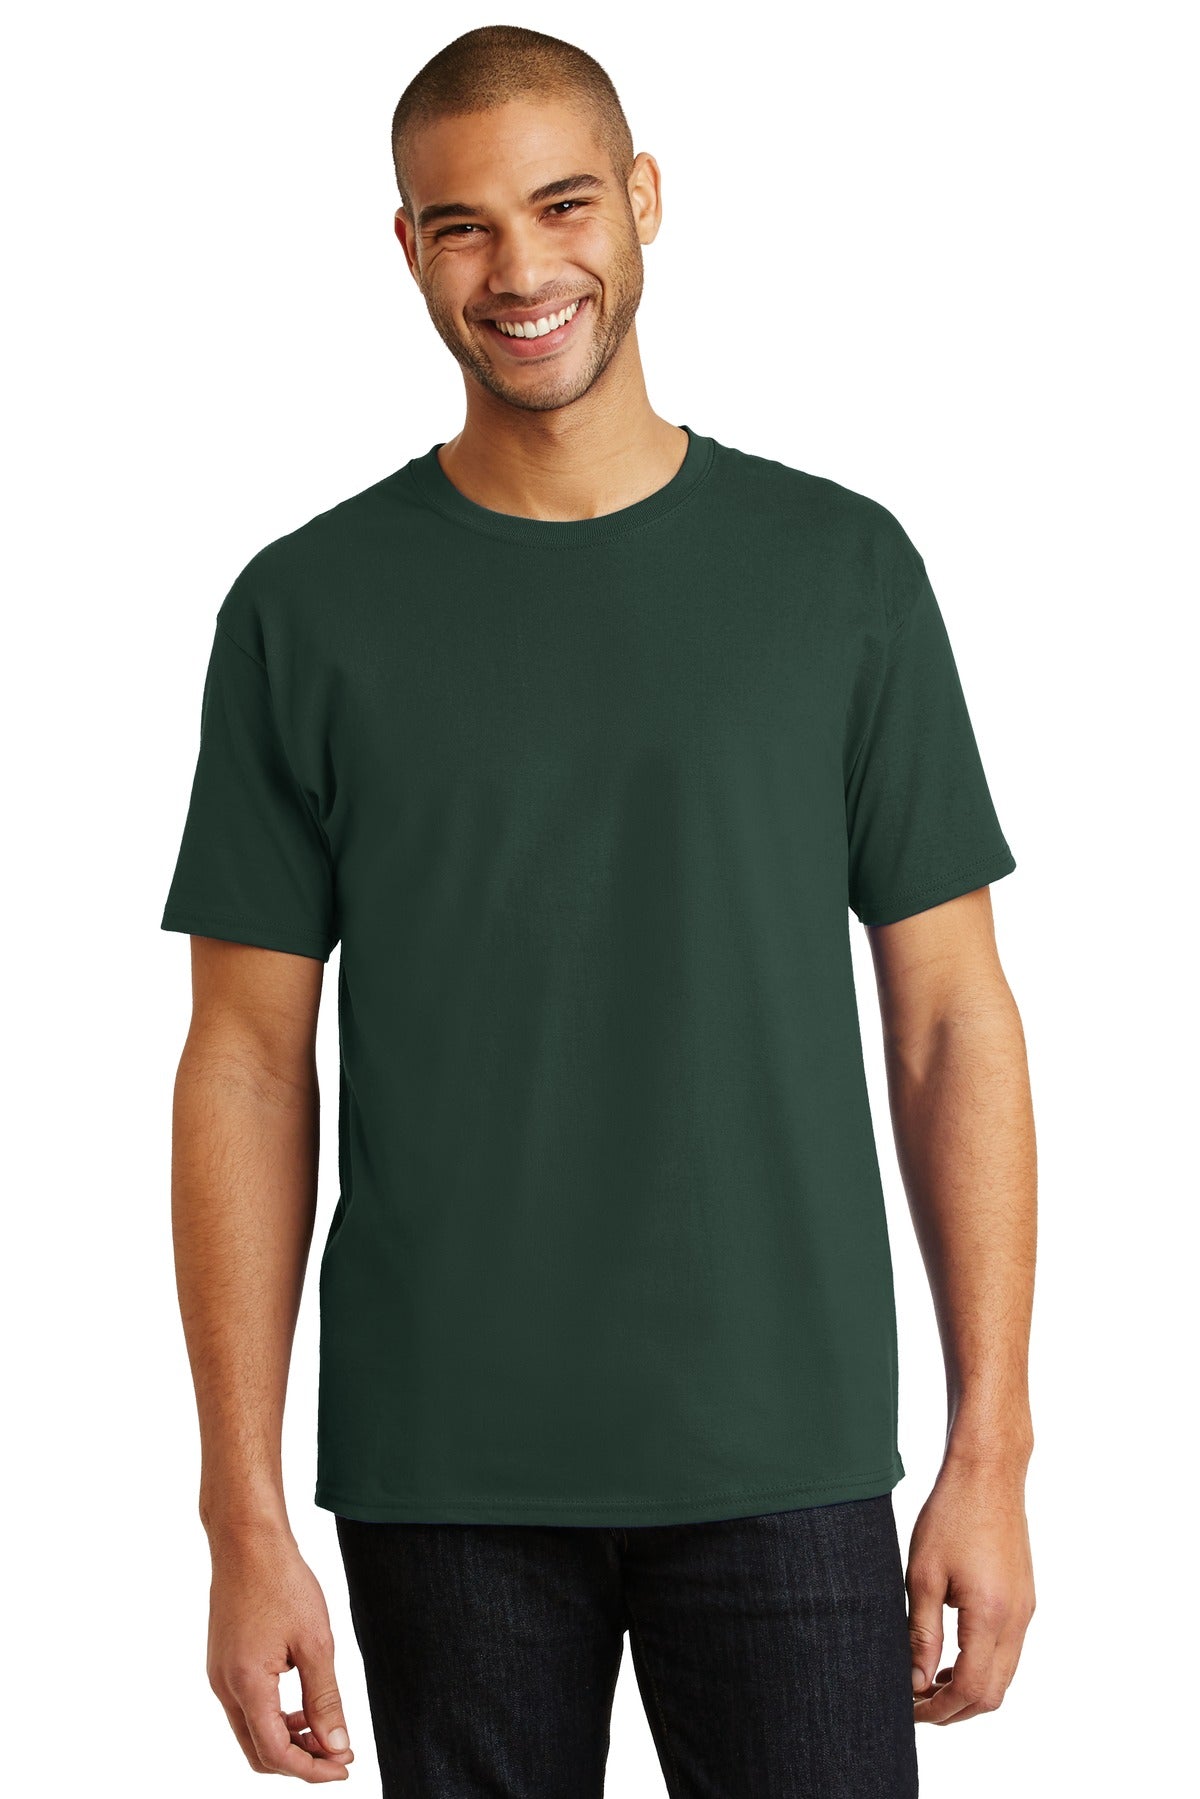 Hanes Tagless T-Shirt Deep Forest / L